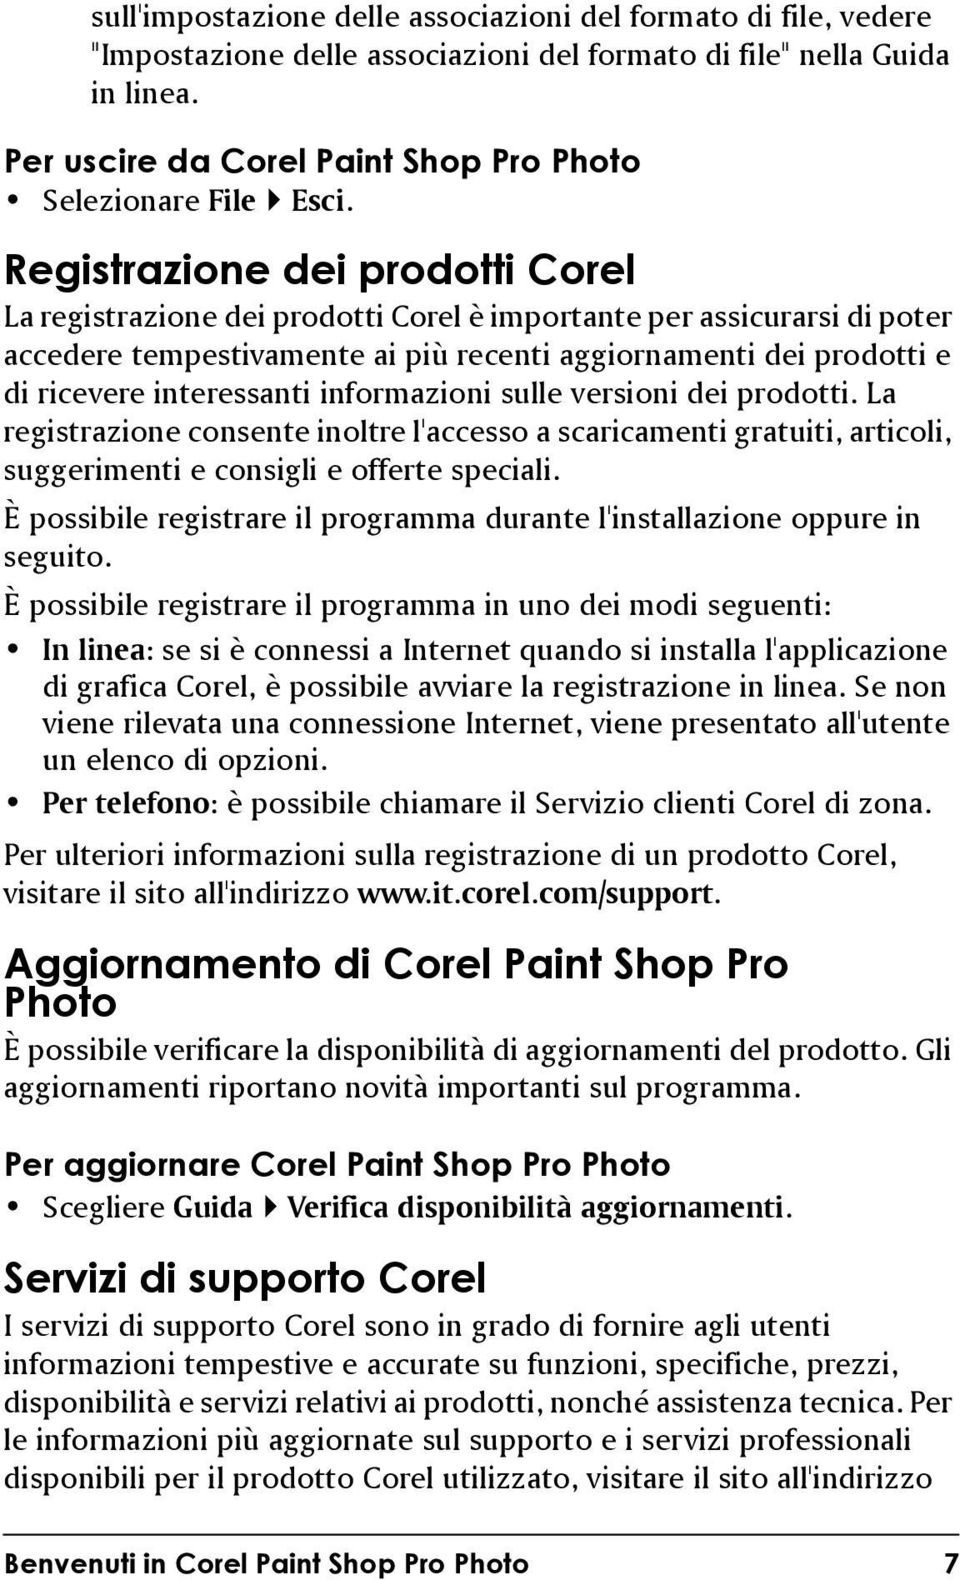 Registrazione dei prodotti Corel La registrazione dei prodotti Corel è importante per assicurarsi di poter accedere tempestivamente ai più recenti aggiornamenti dei prodotti e di ricevere